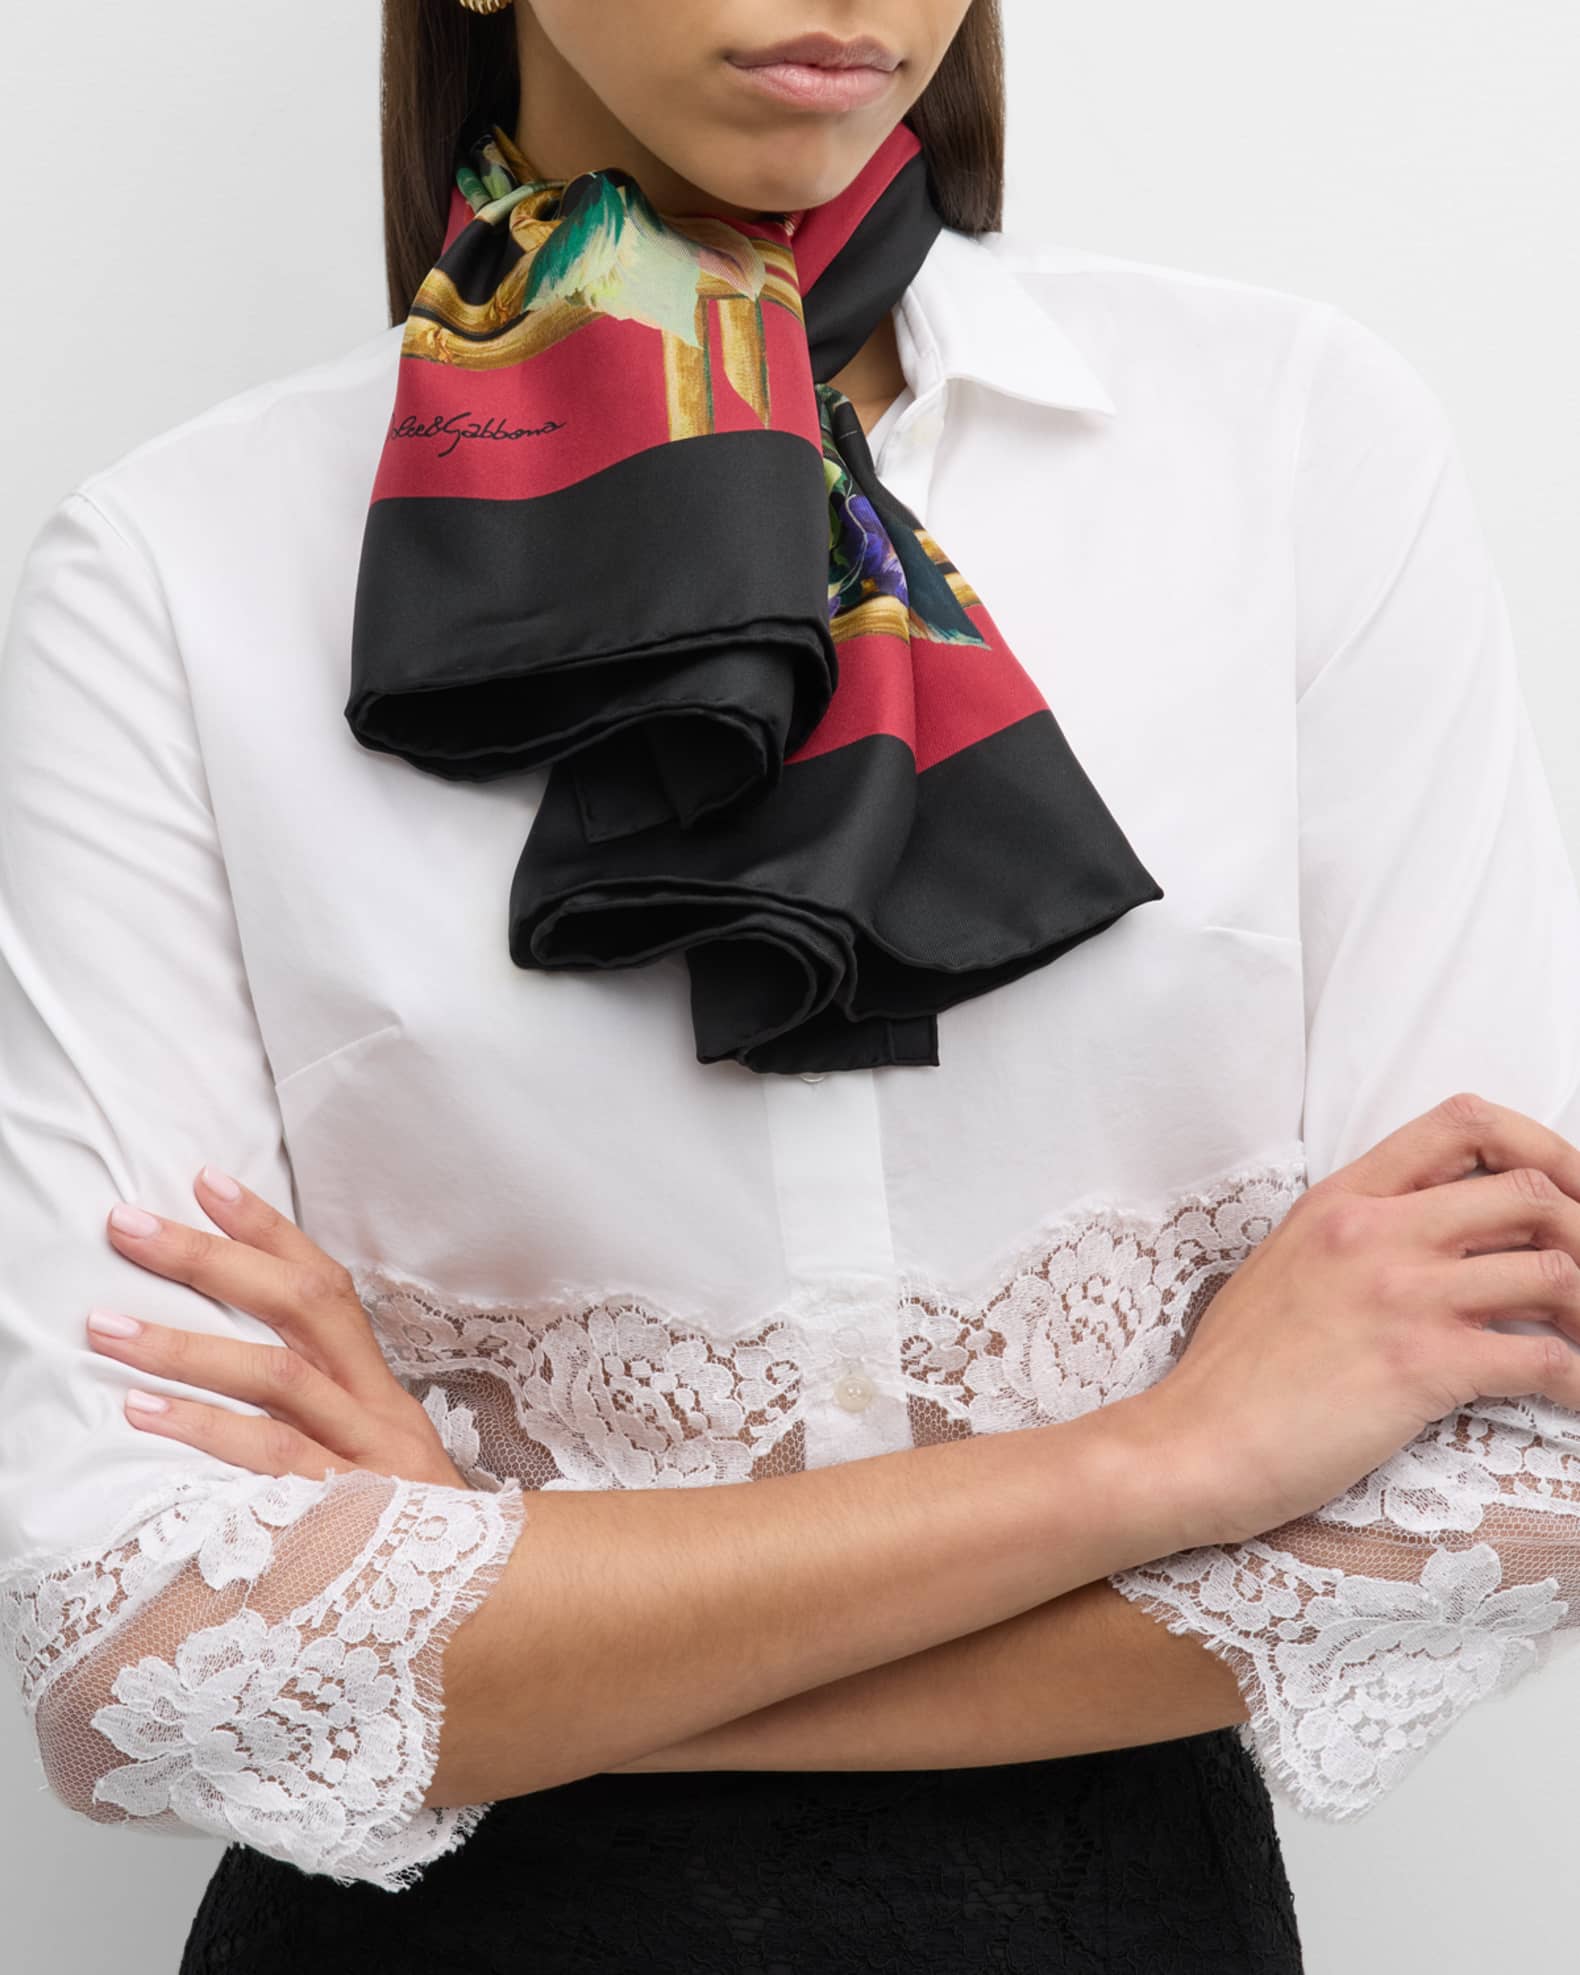 Floral-print silk-twill scarf